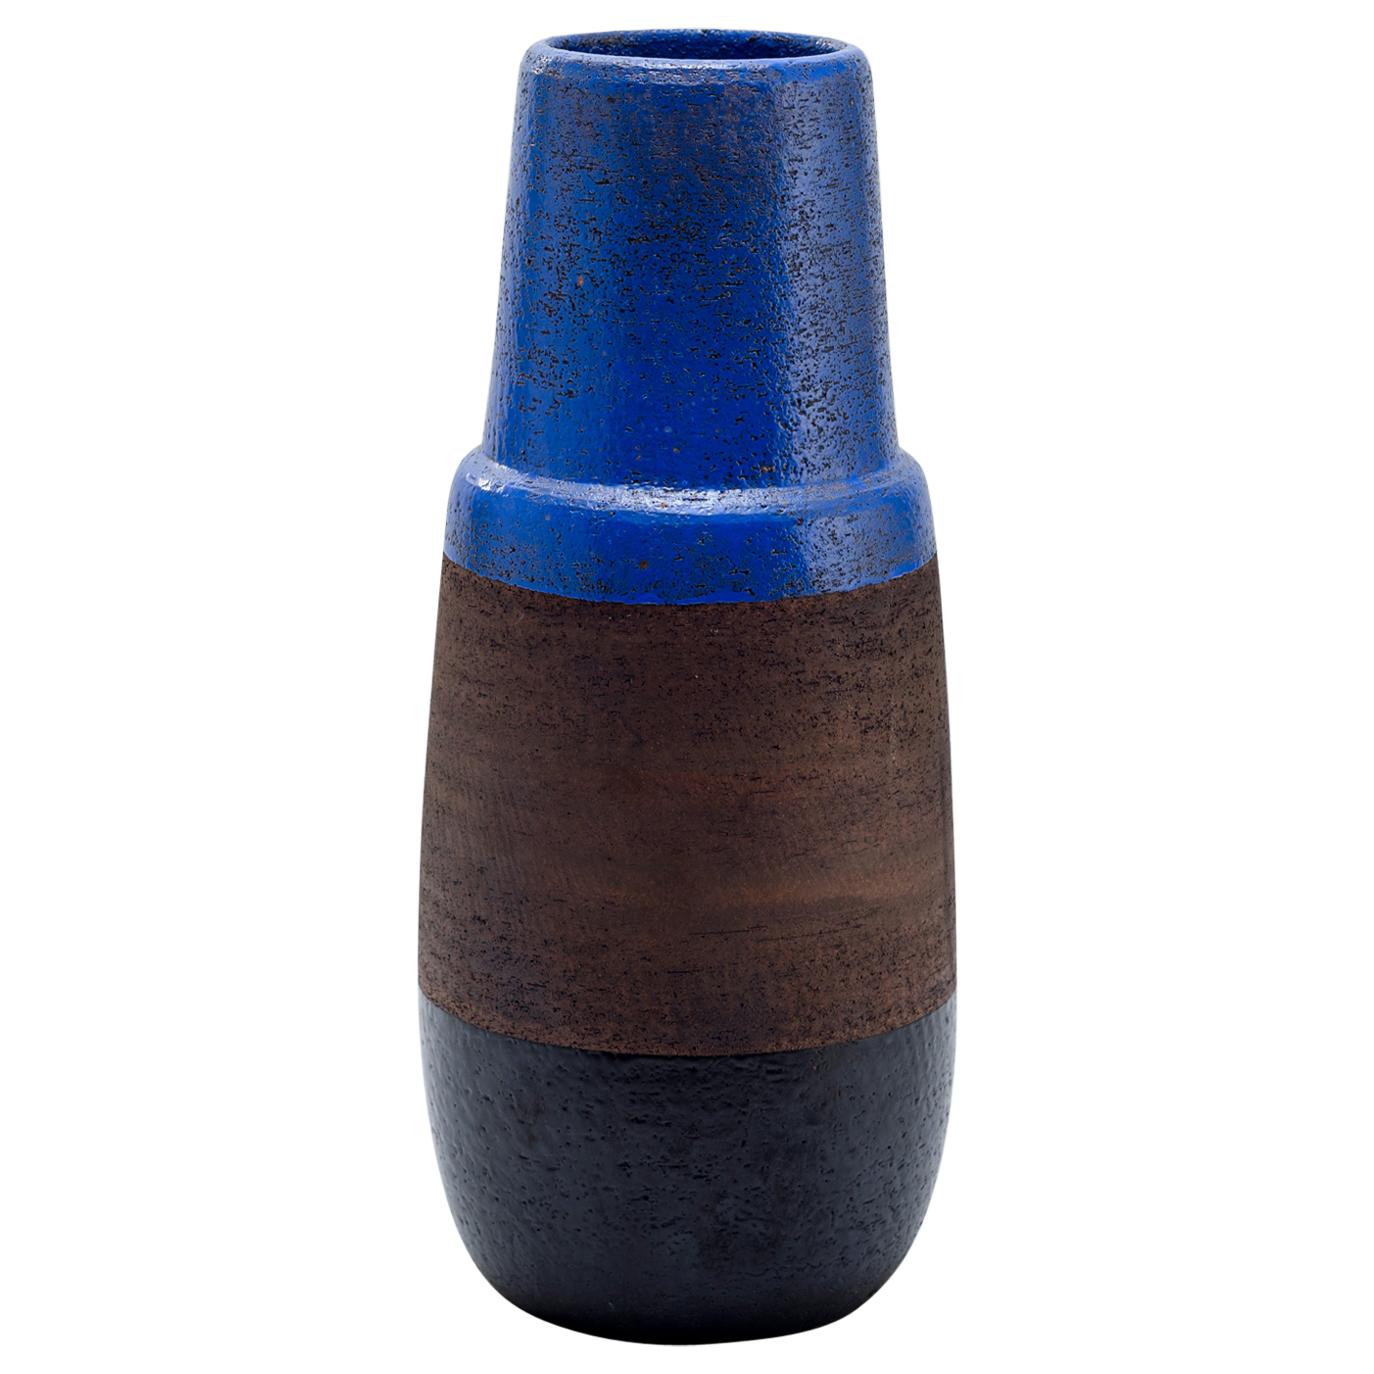 Ettore Sottsass "Ceramiche di Lava" Vase, Limited Edition, Italy, 1959-2003 For Sale